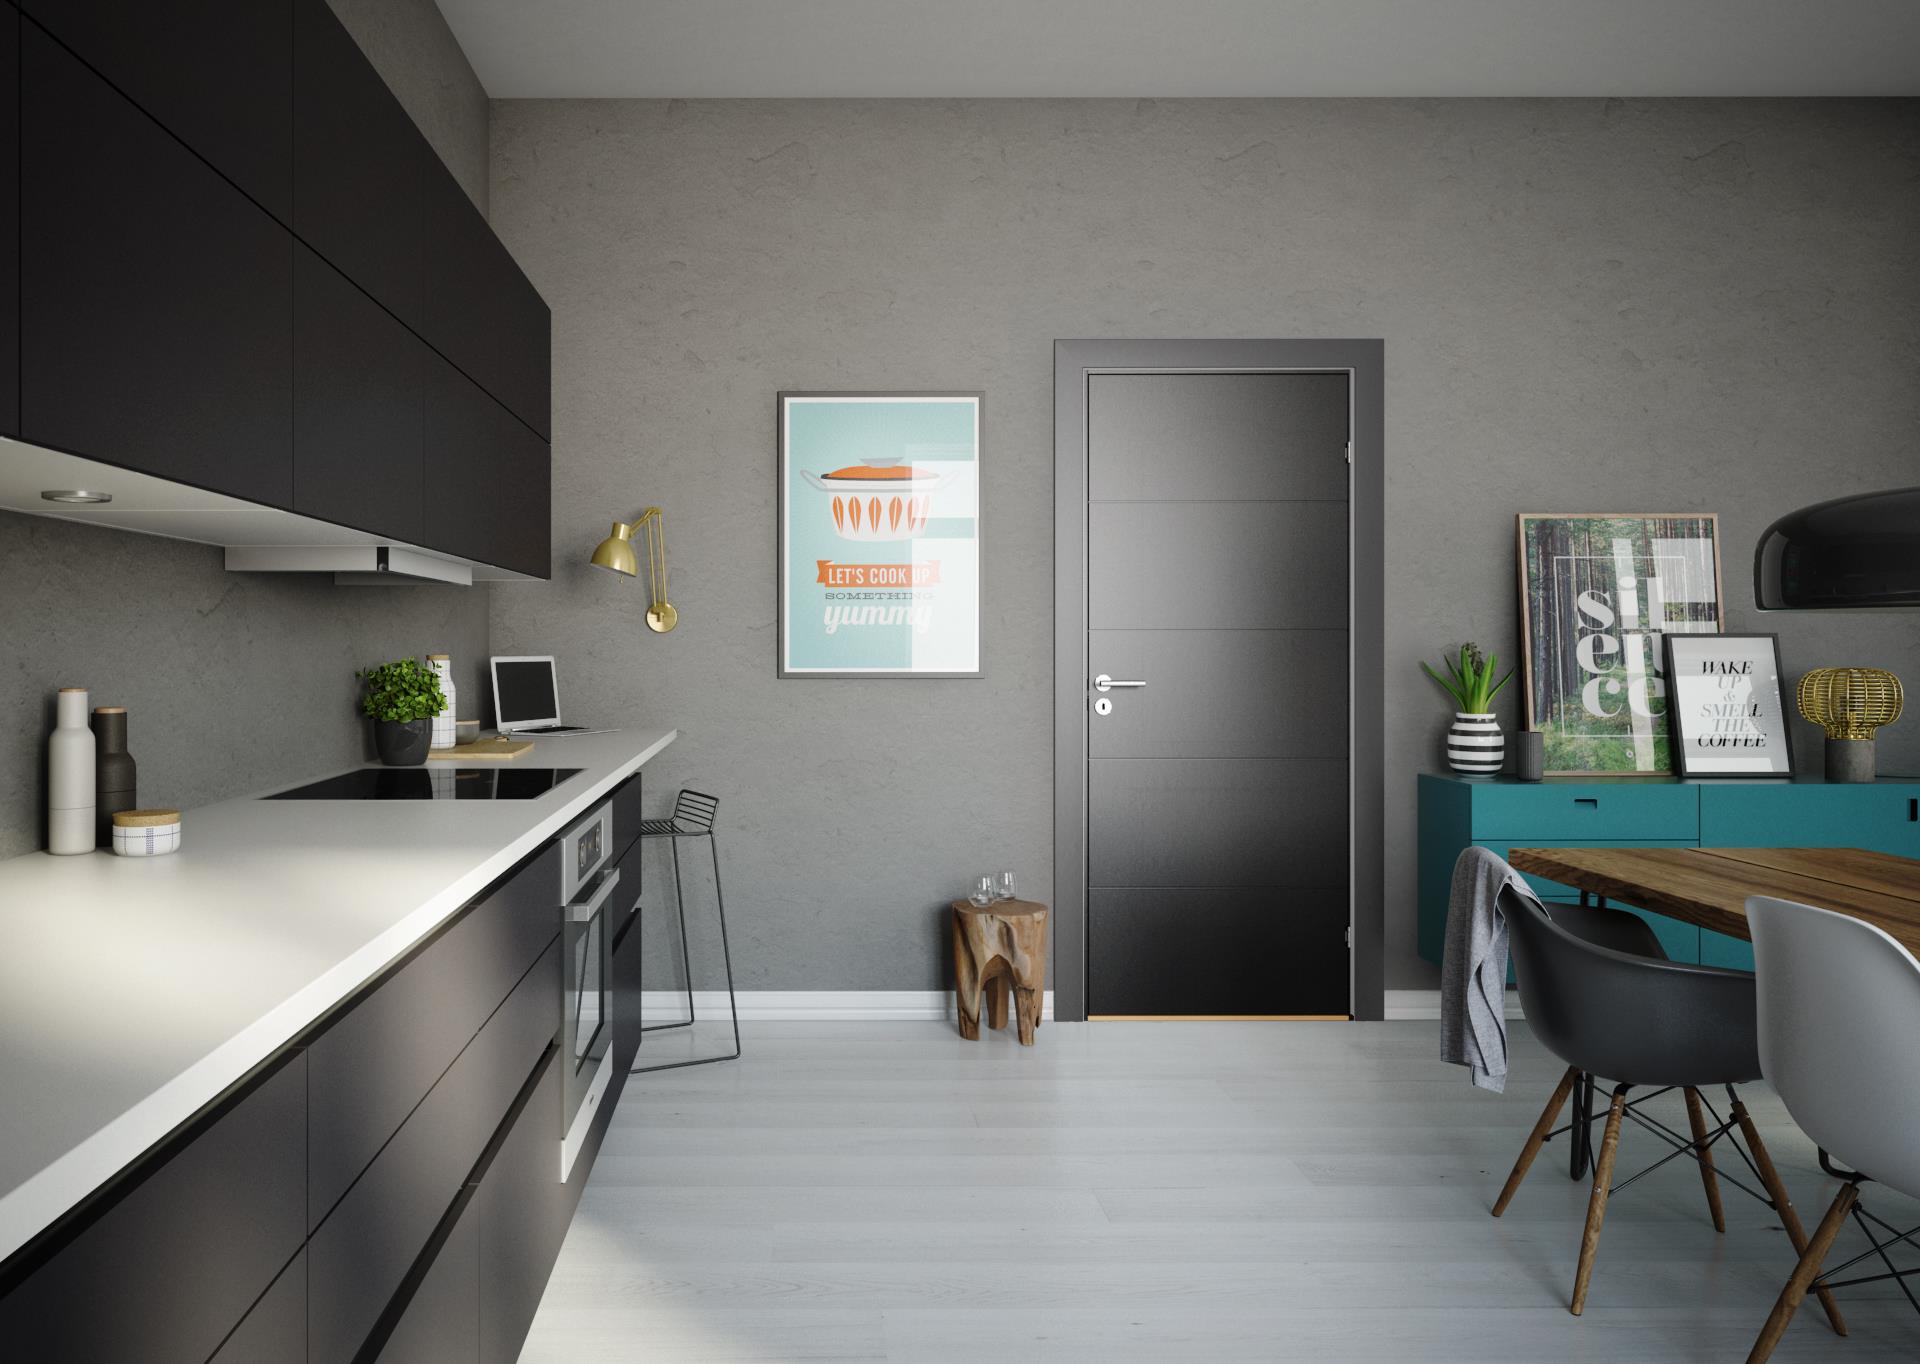 Glatte døre - minimalistisk med uendelige muligheder